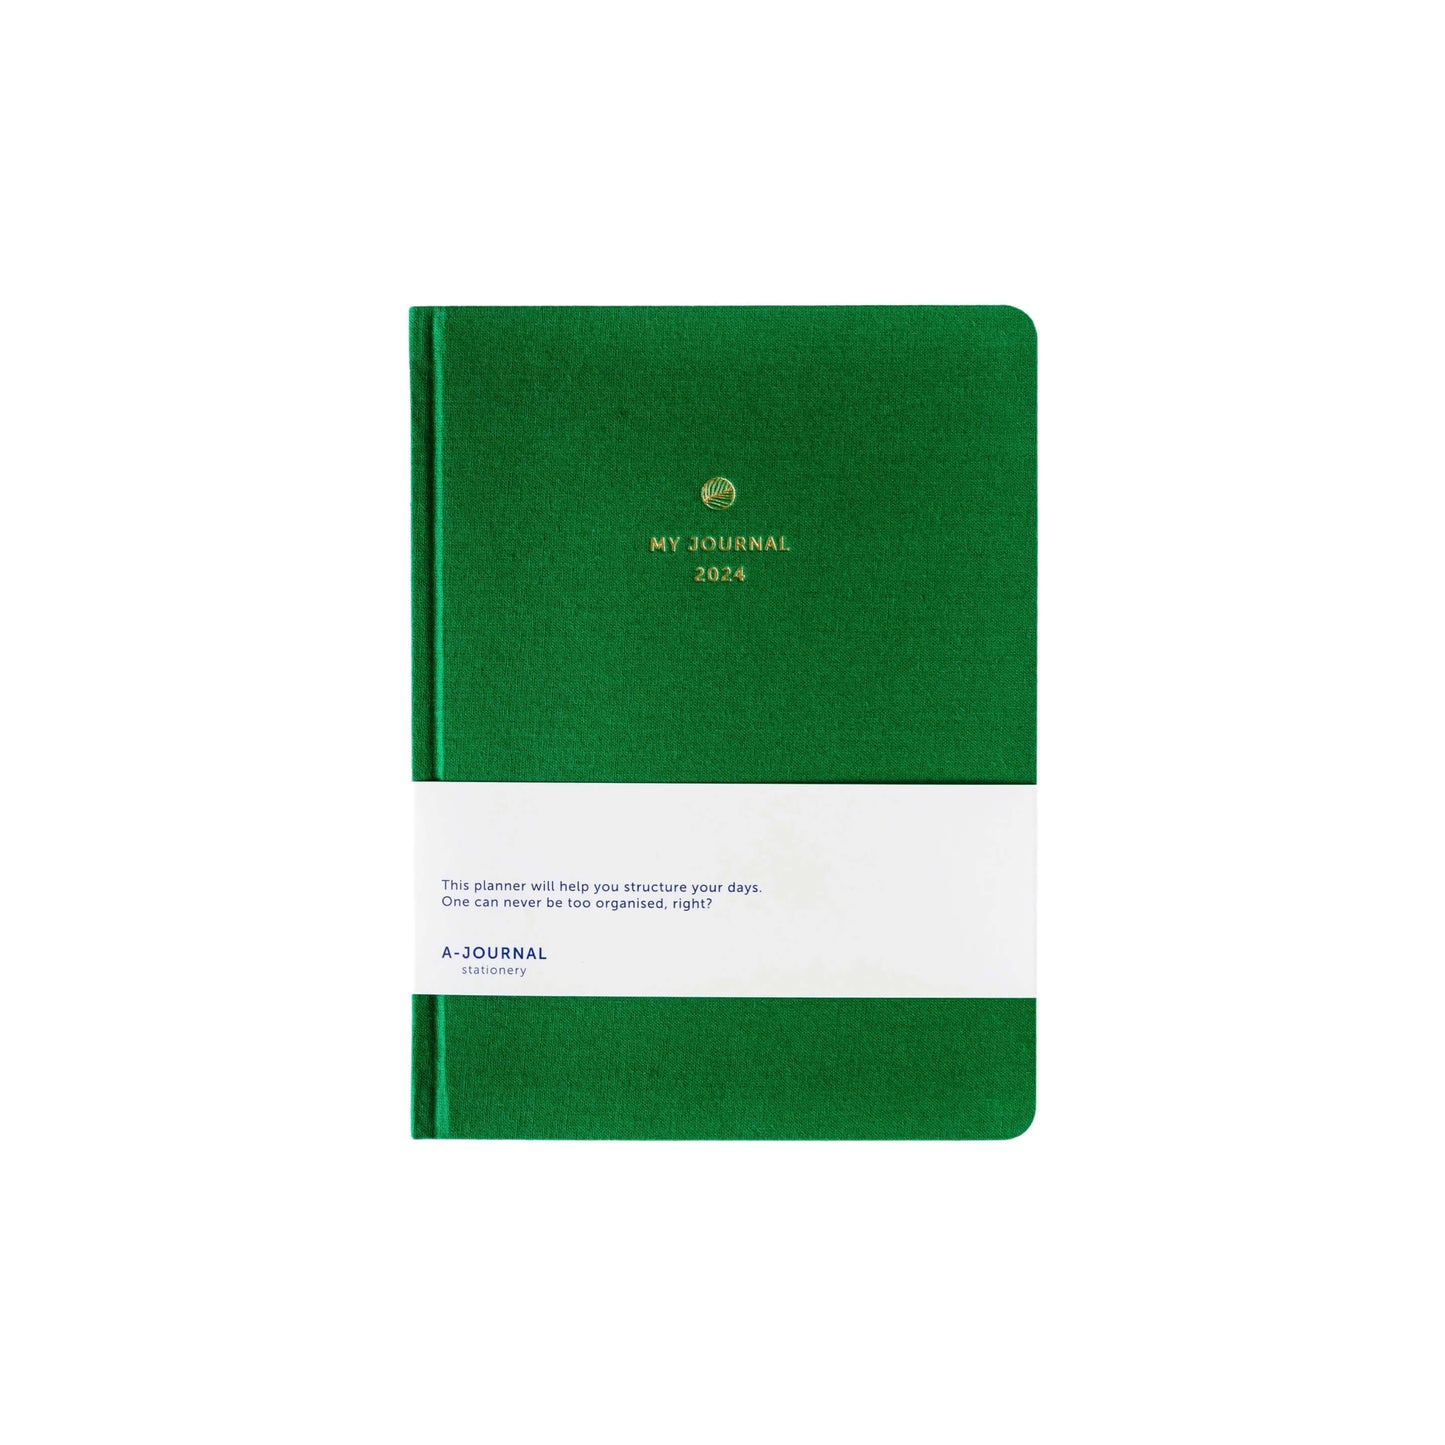 A-Journal – Meine Tagebuchagenda 2024 – Grünes Leinen